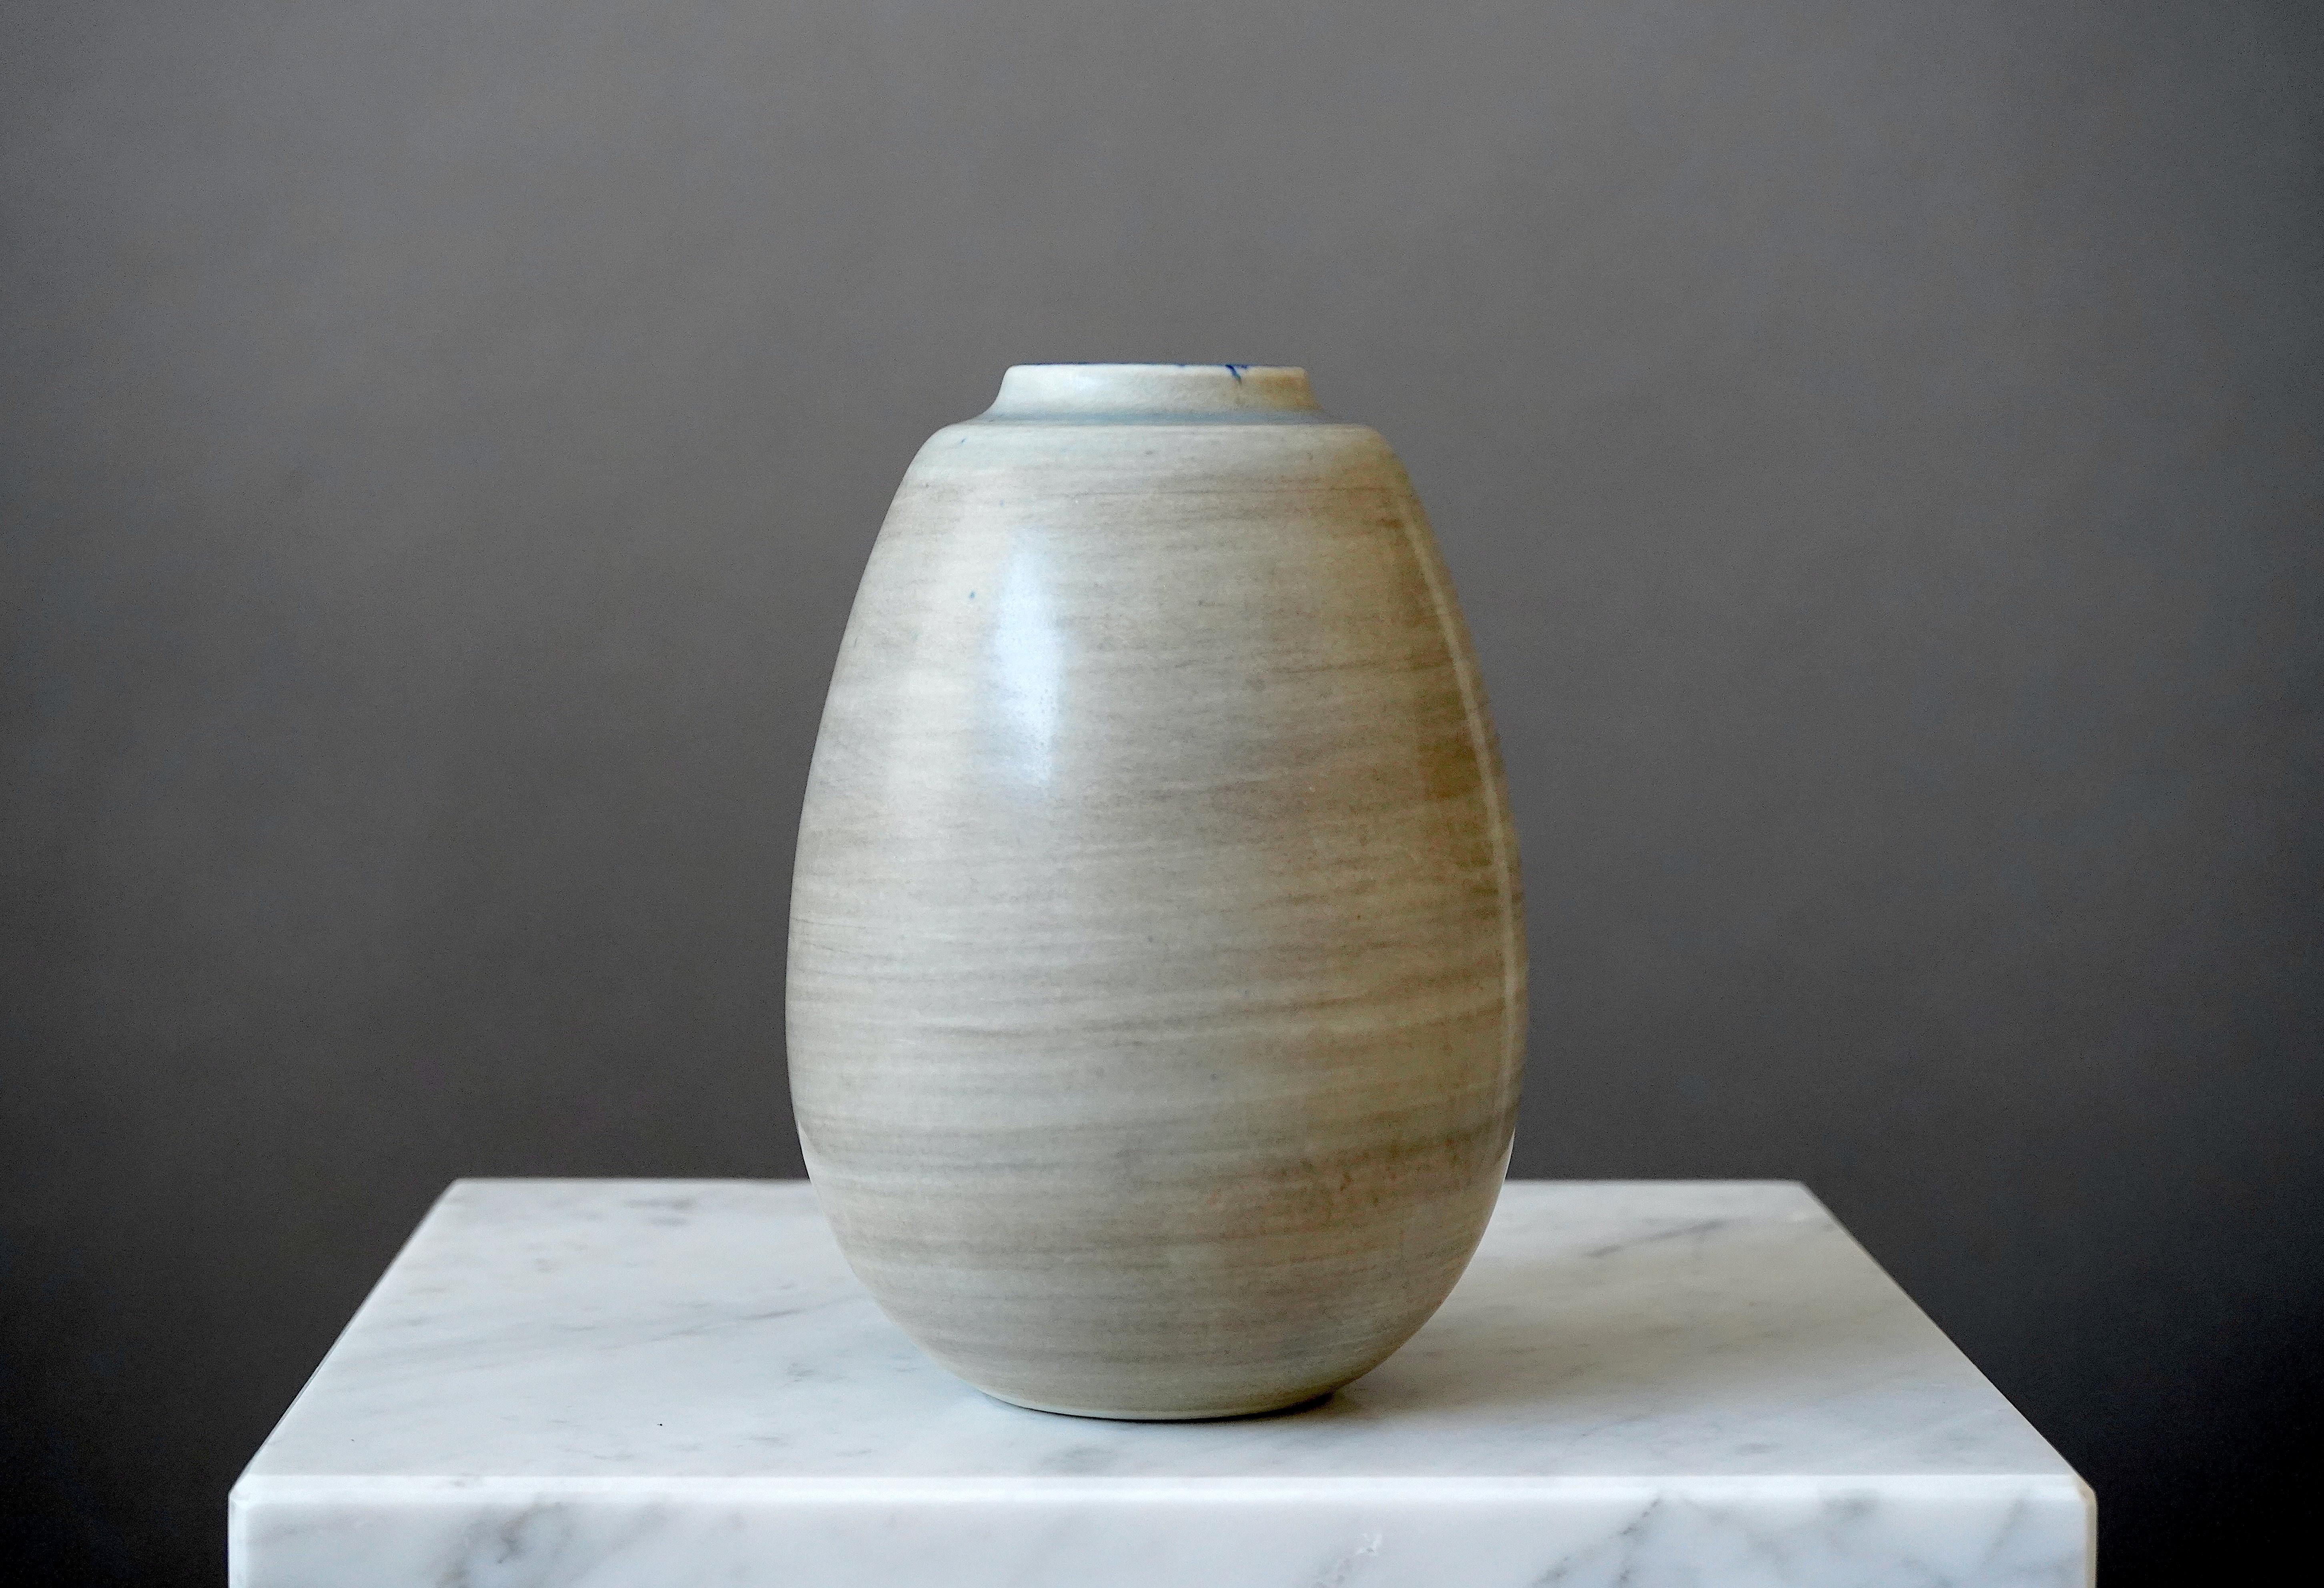 Schöne und seltene Vase aus Steingut, entworfen von Gertrud Lönegren.
Dieses Studio-Stück wurde zwischen 1936-41 in Rorstrand in Schweden geschaffen.

Ausgezeichneter Zustand. Aufgedruckt 'Rörstrand / Lönegren / SCHWEDEN / HANDDREJAD'.

Gertrud